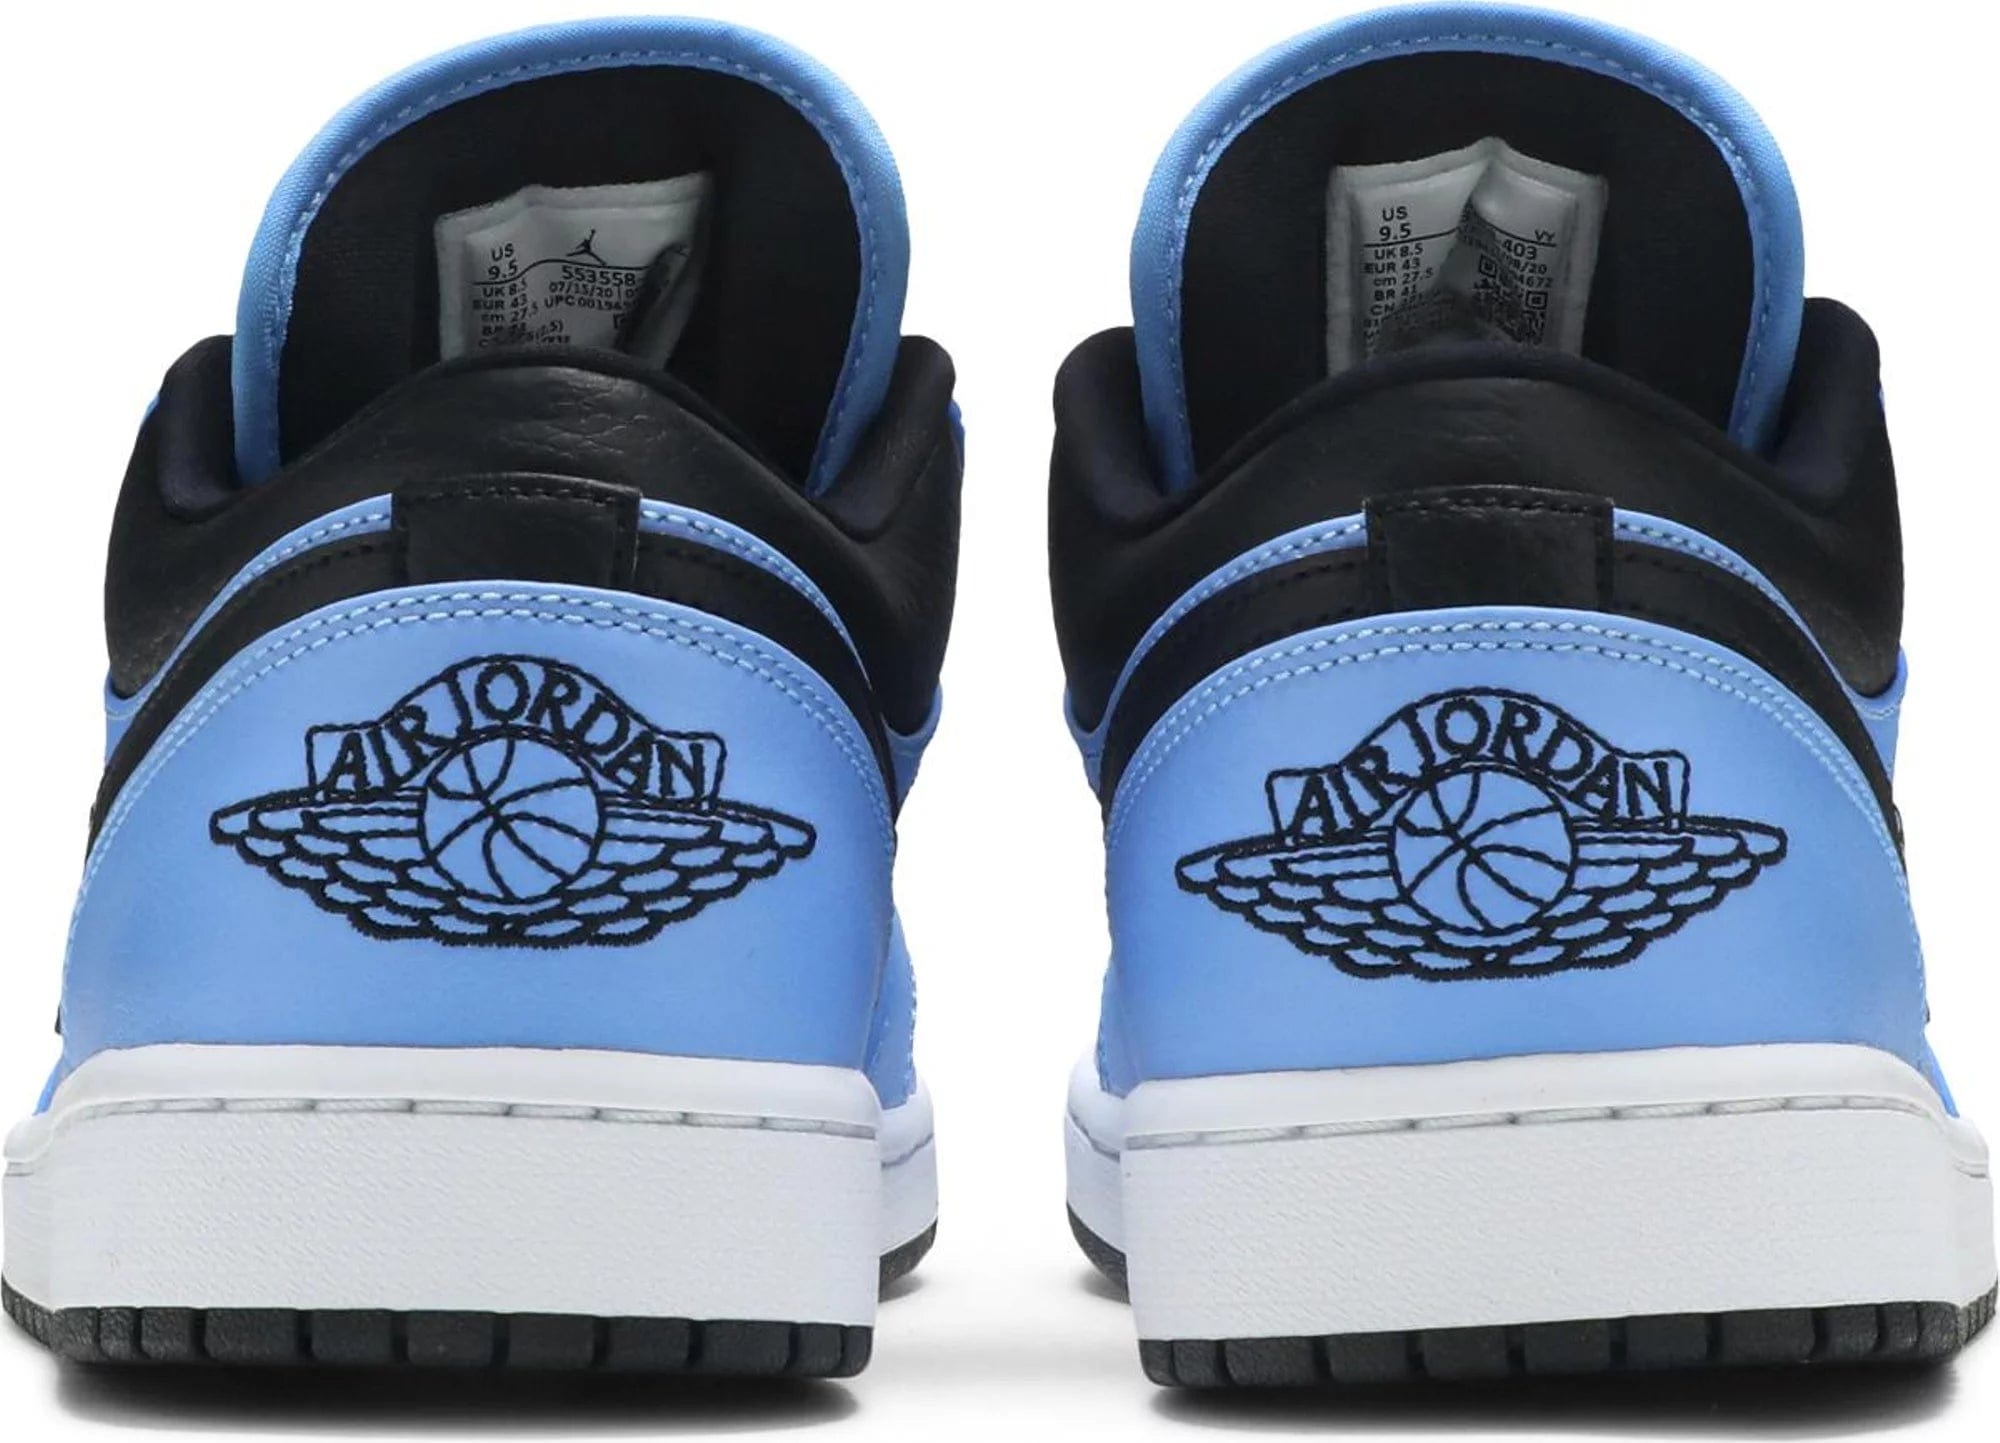 sneakers Nike Air Jordan 1 Low University Blue Black Men's